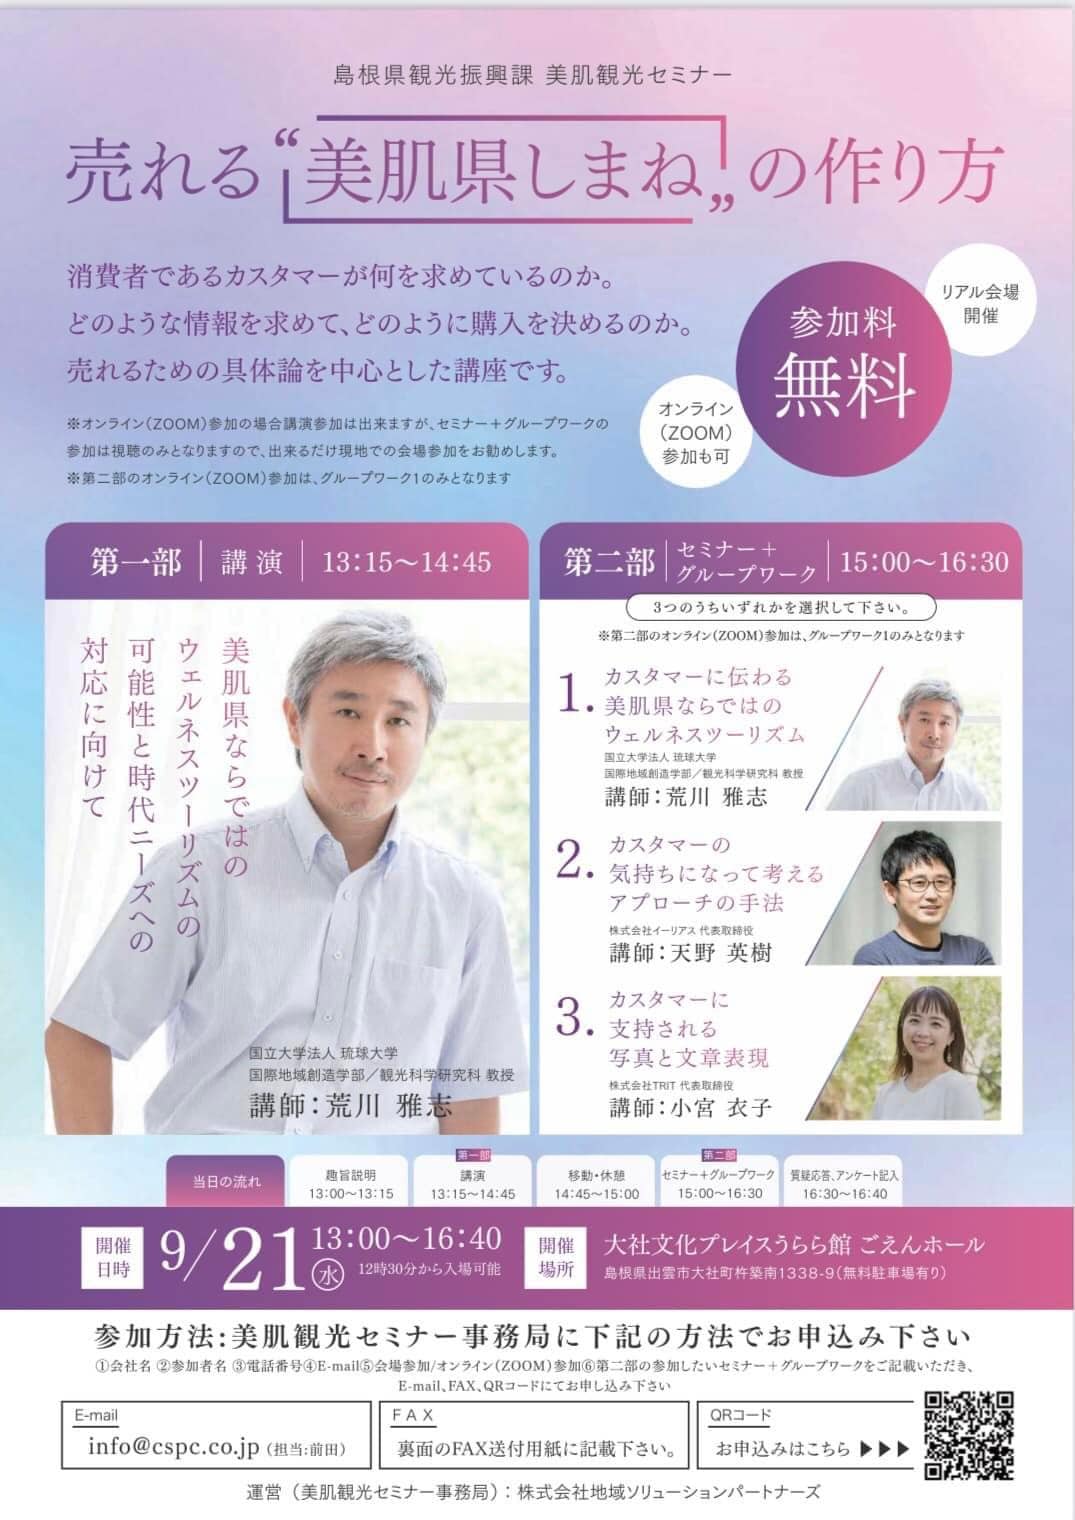 島根県観光振興課 美肌観光セミナーに登壇